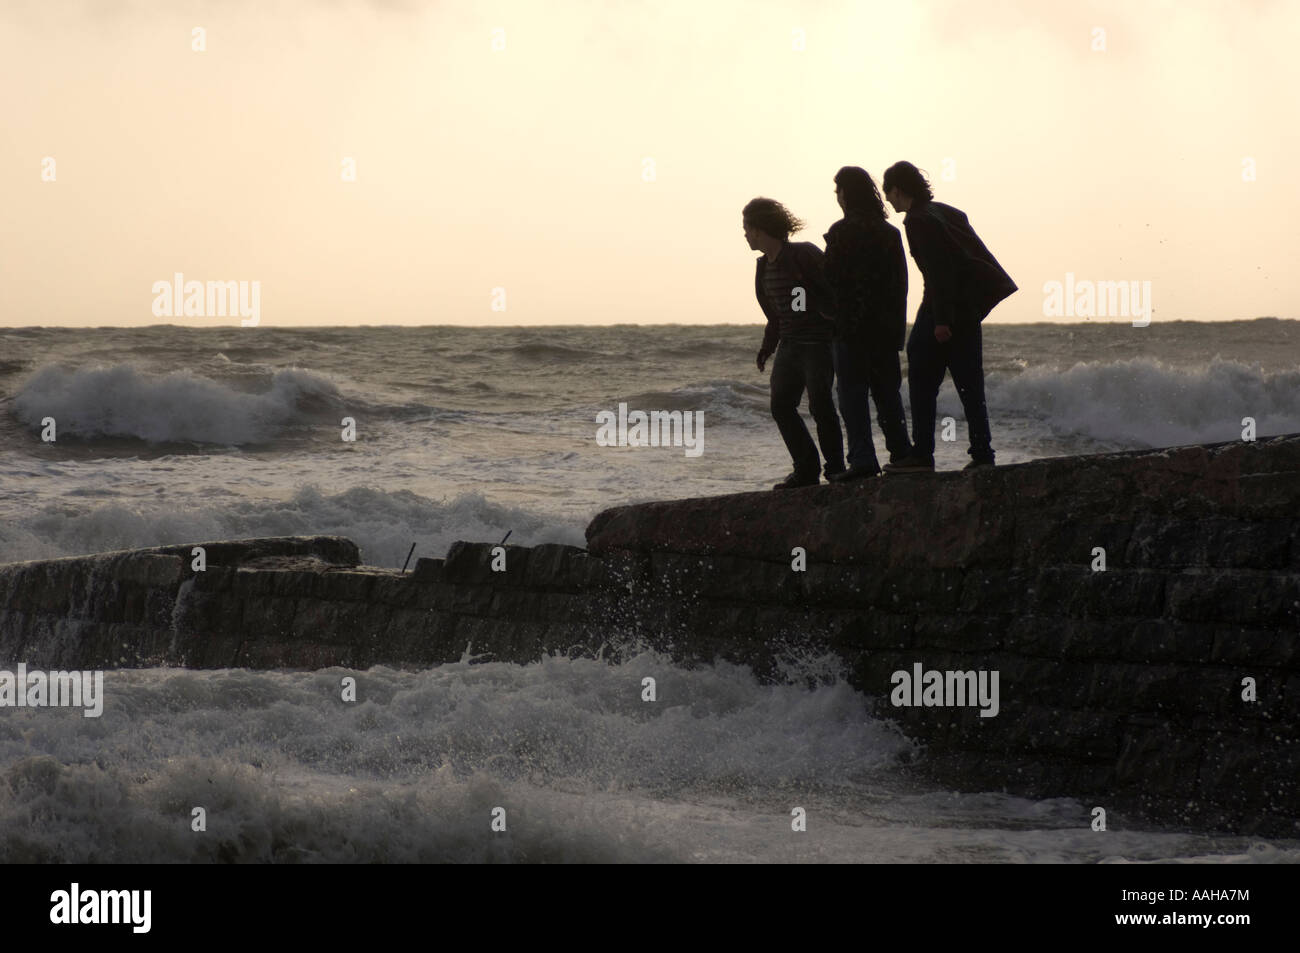 Silhouette von drei Personen junge Männer stehen auf steinernen Steg bei einem Sturm die Wellen ausweichen; Gesundheit und Sicherheit Risiko Stockfoto